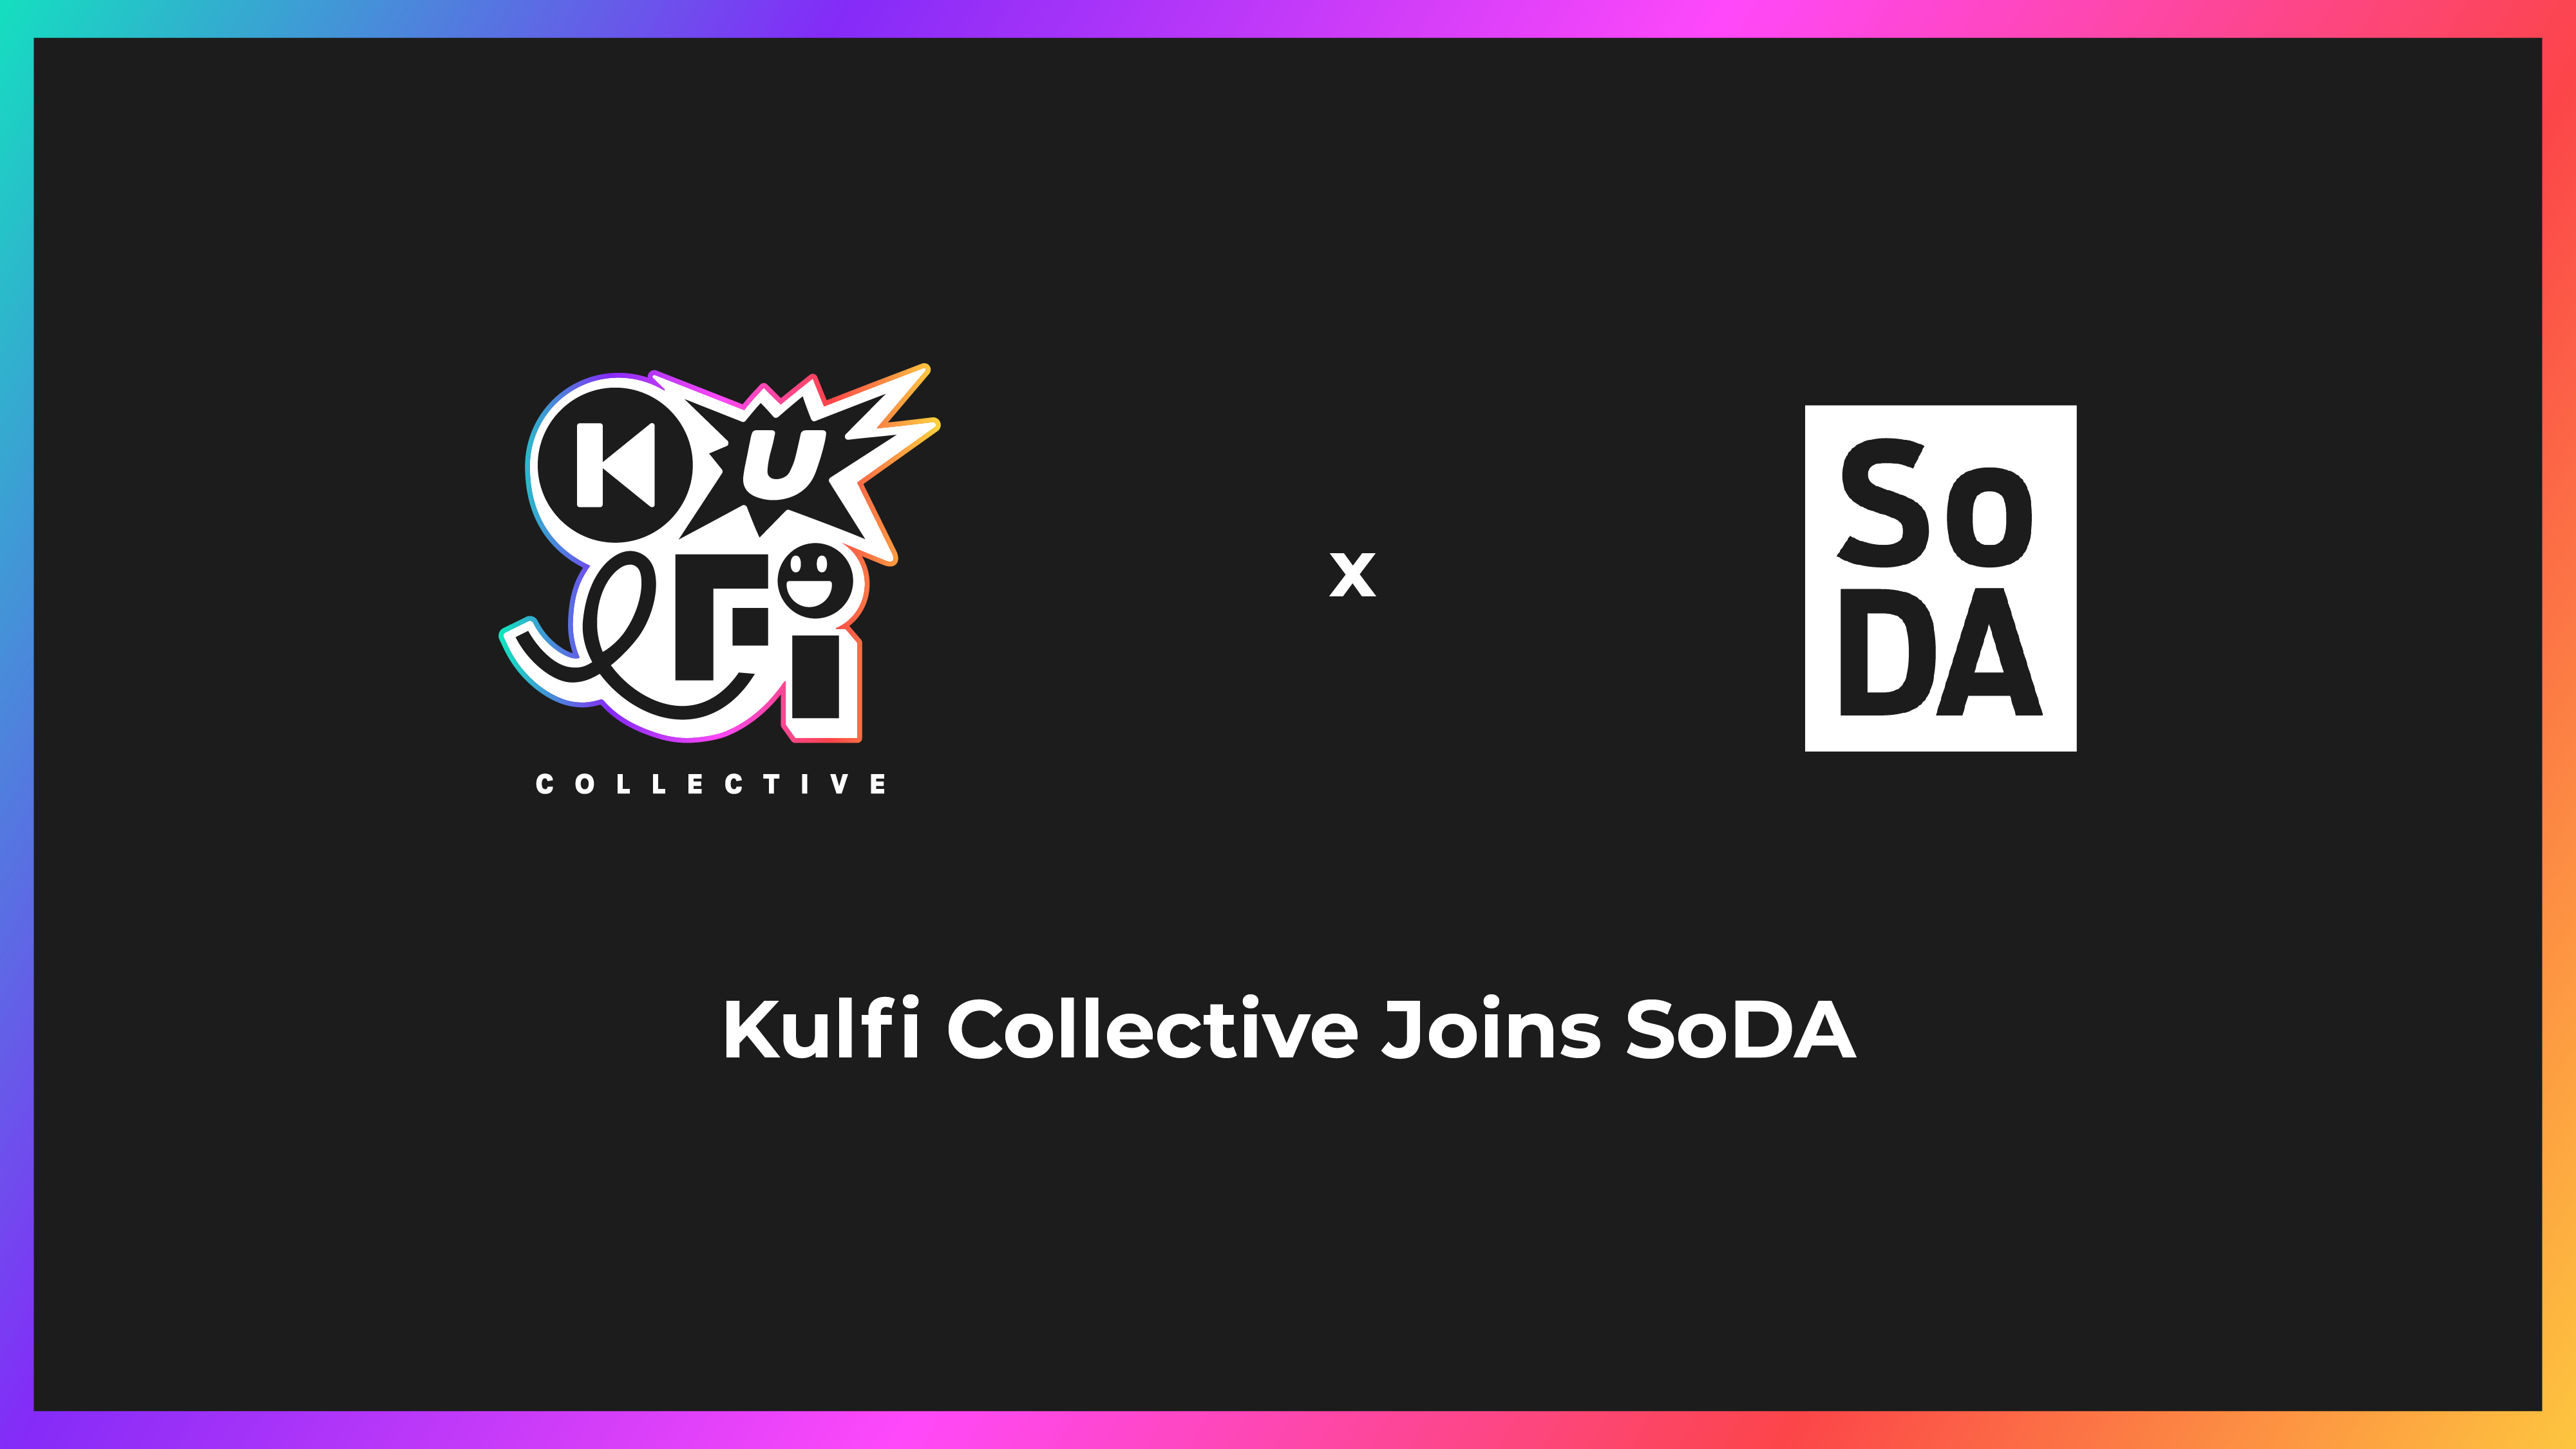 Kulfi Collective joins SoDA